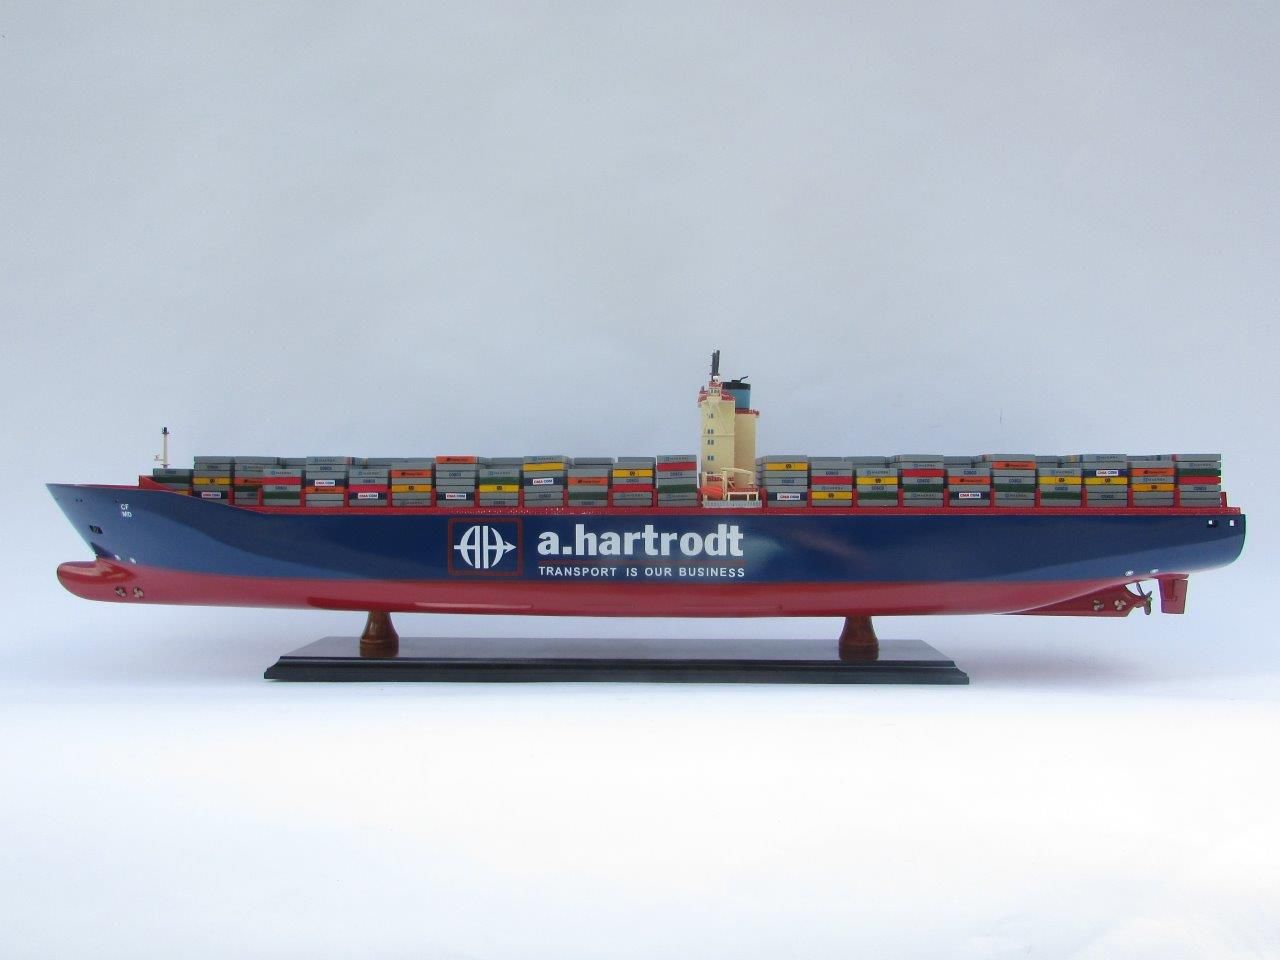 Maquette de Bateau Personnalisée Emma Maersk Avec Changement de Marque